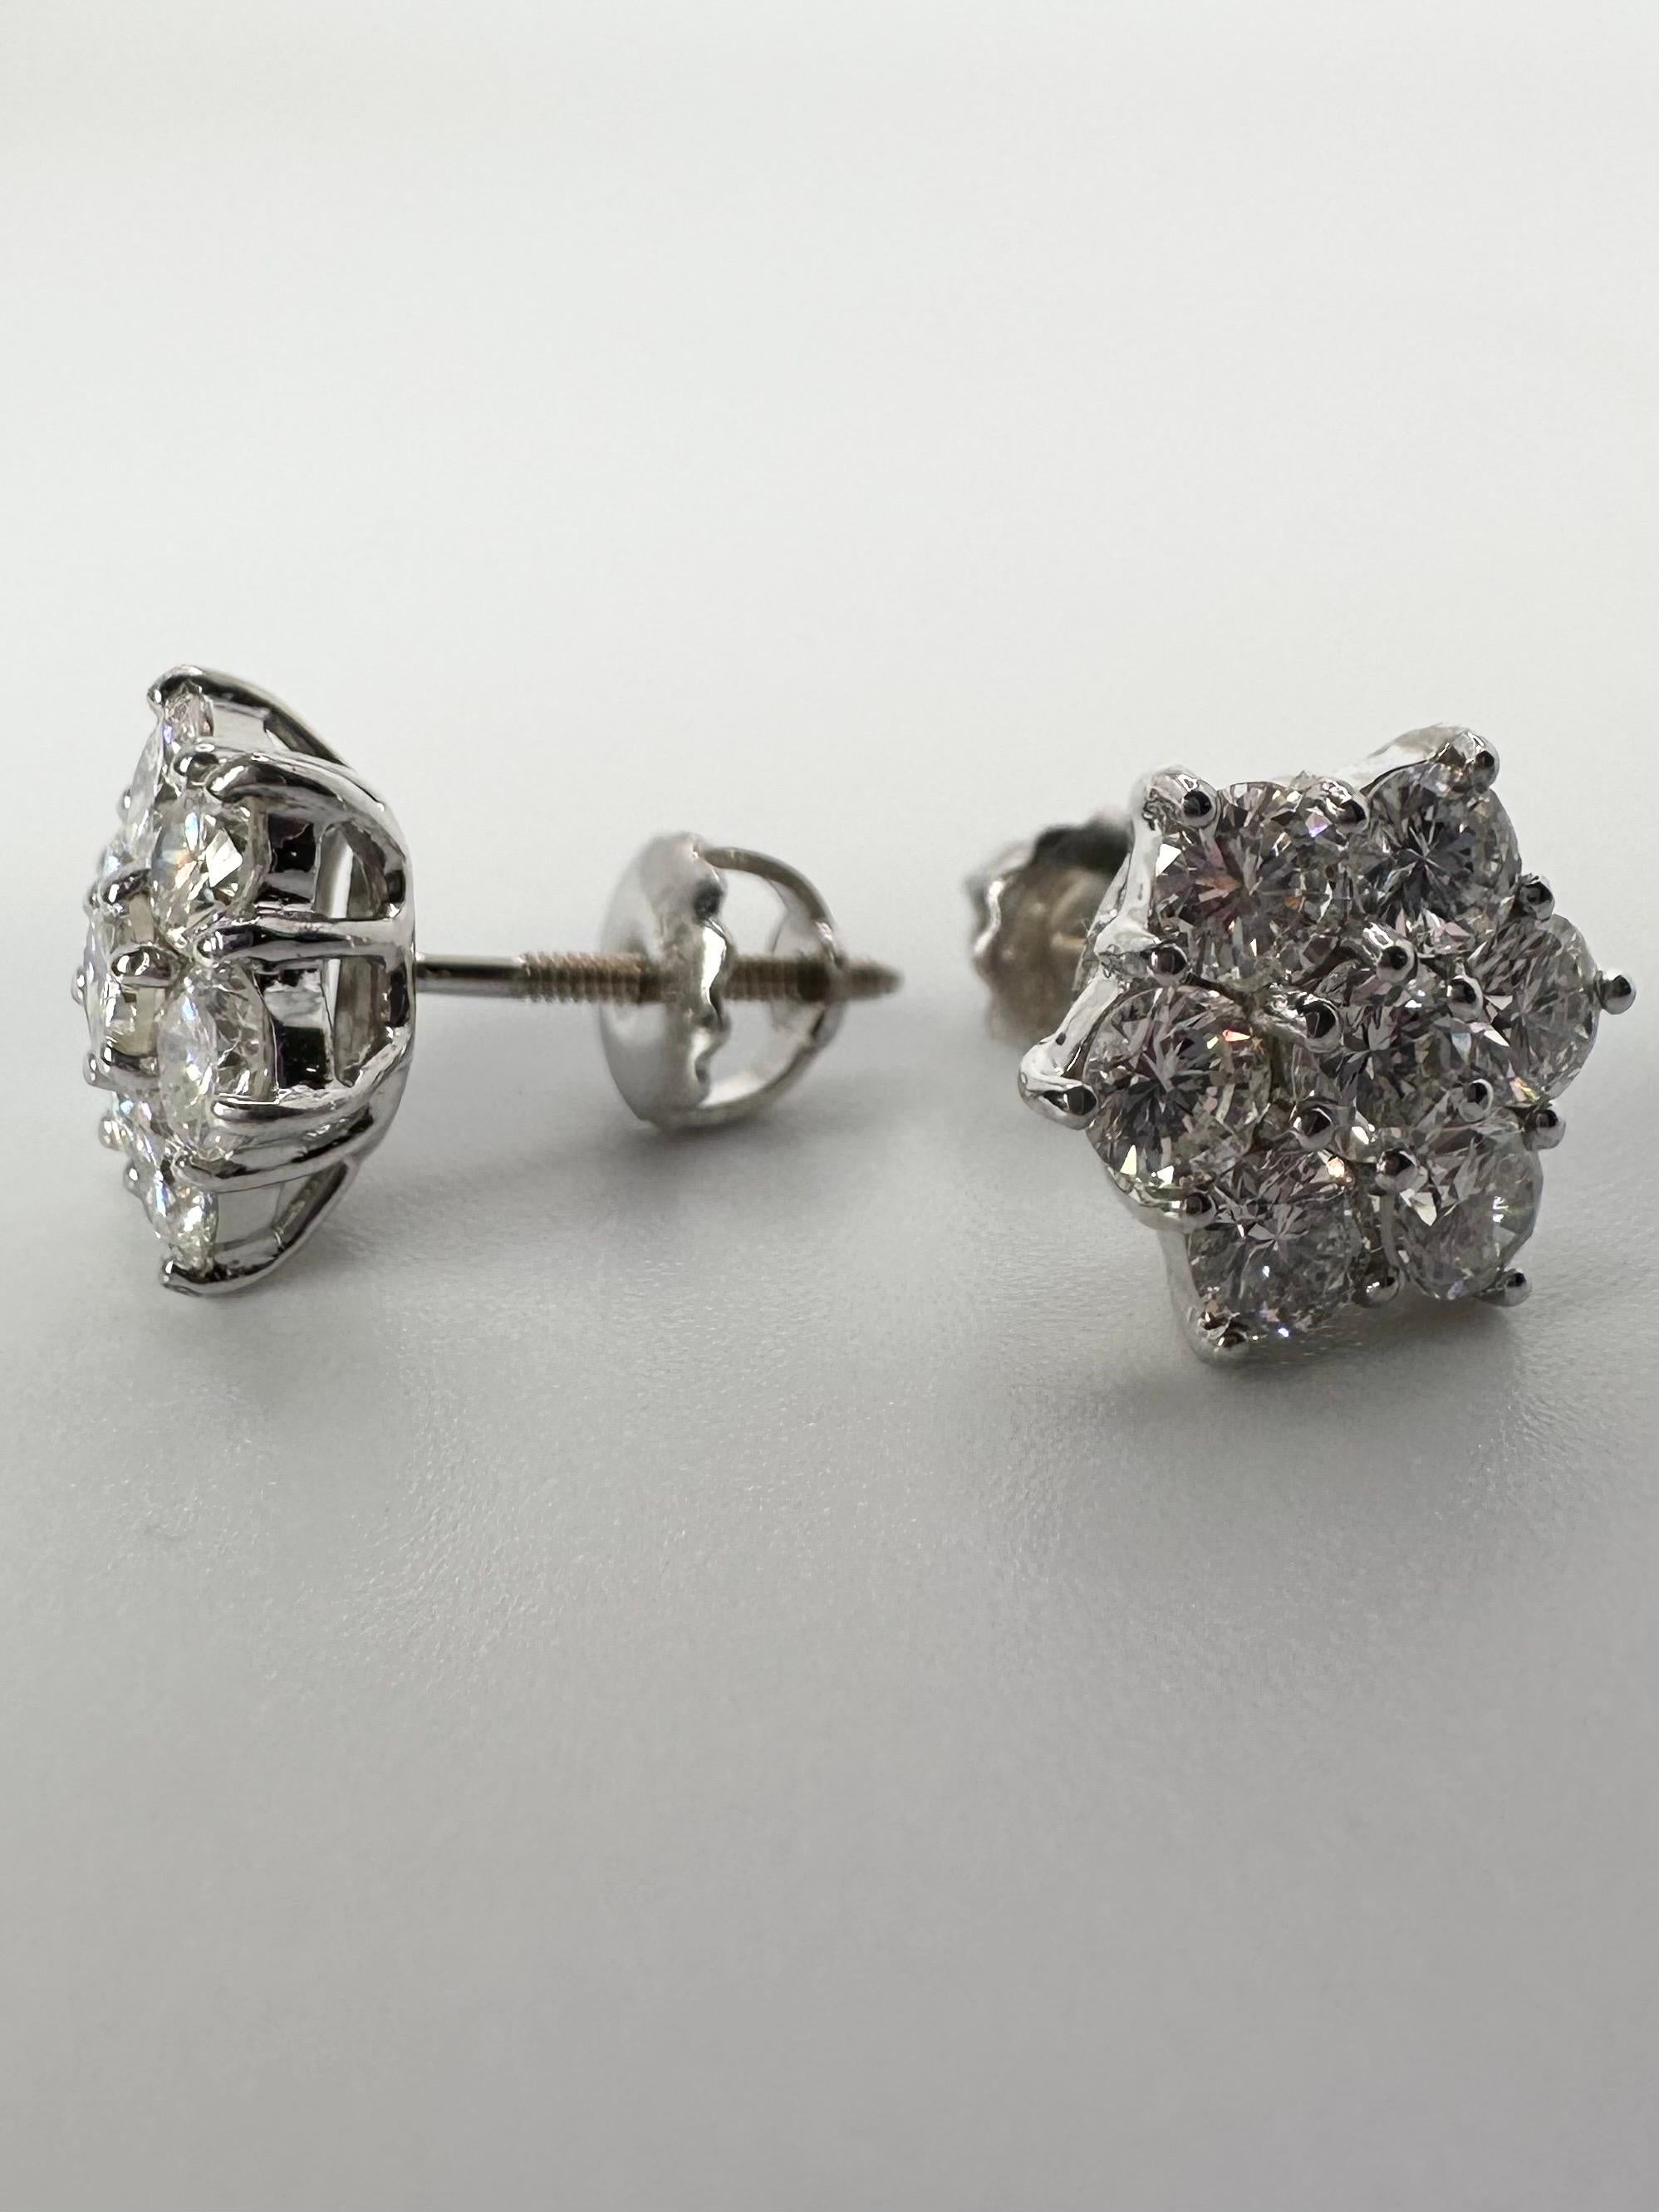 Snowflake earrings diamond earrings 14KT white gold screw backs 1ct In New Condition For Sale In Jupiter, FL